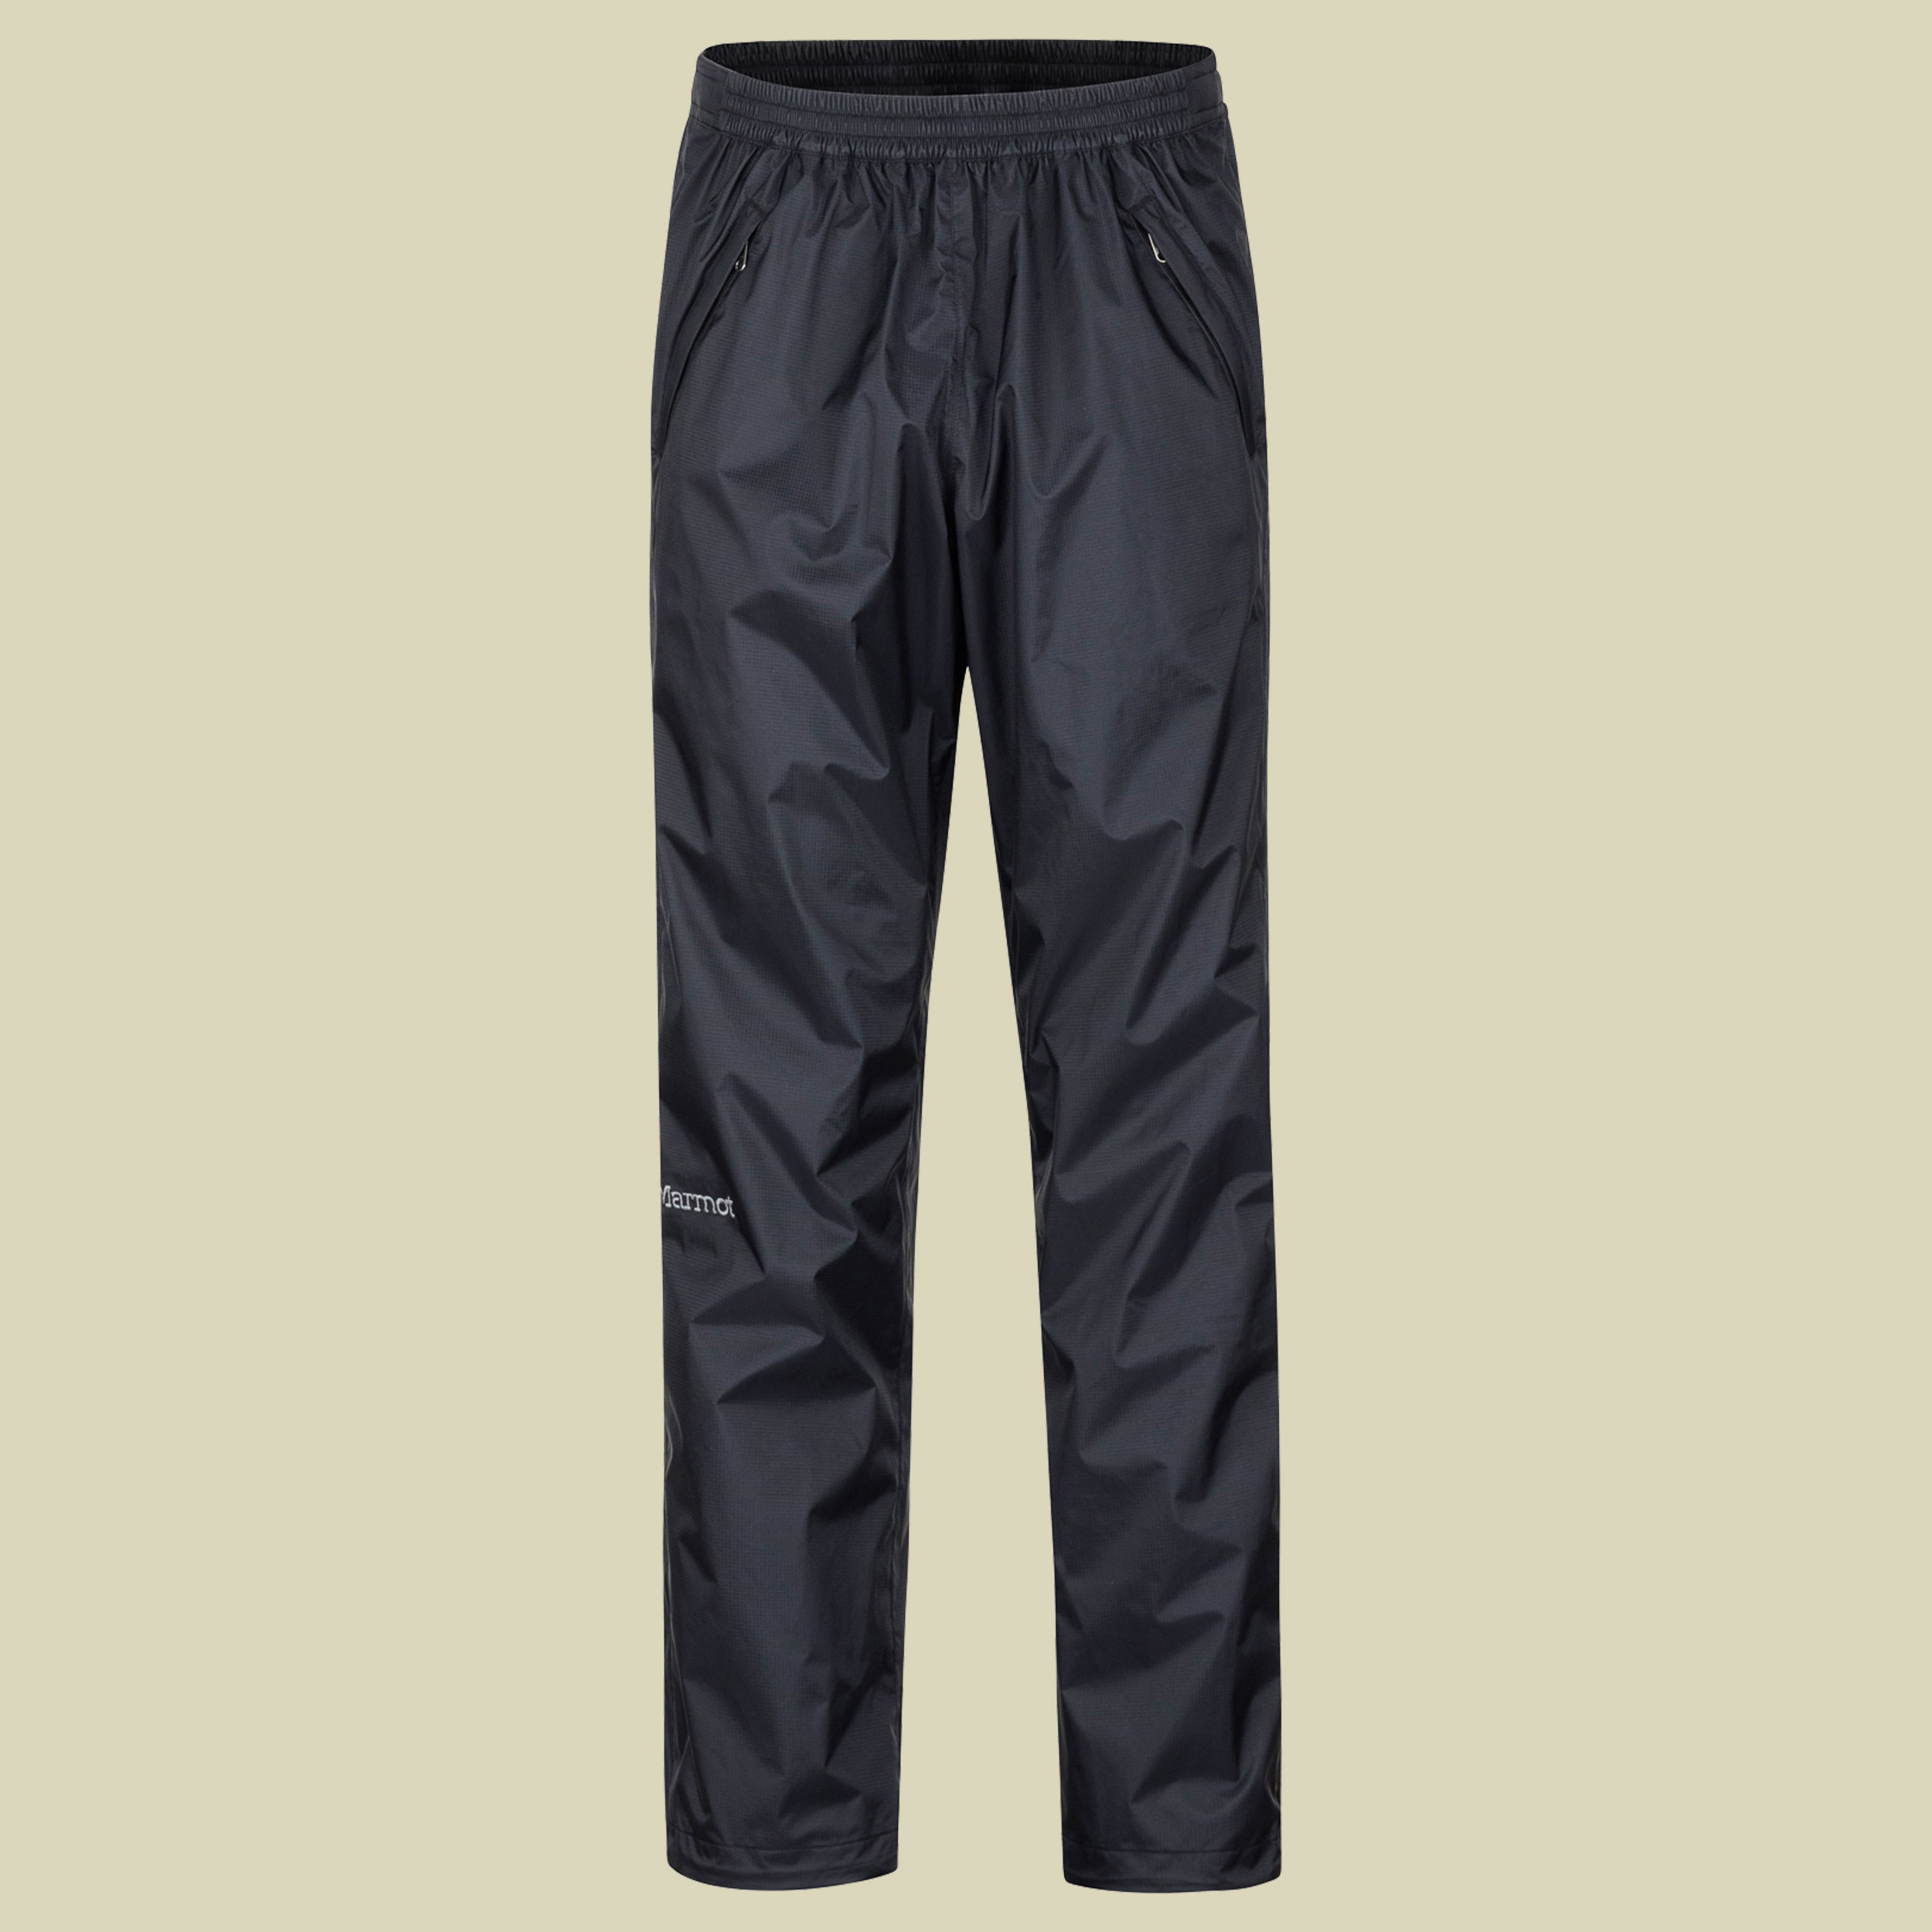 PreCip Eco Full Zip Pant short Men Größe XL (short) Farbe black